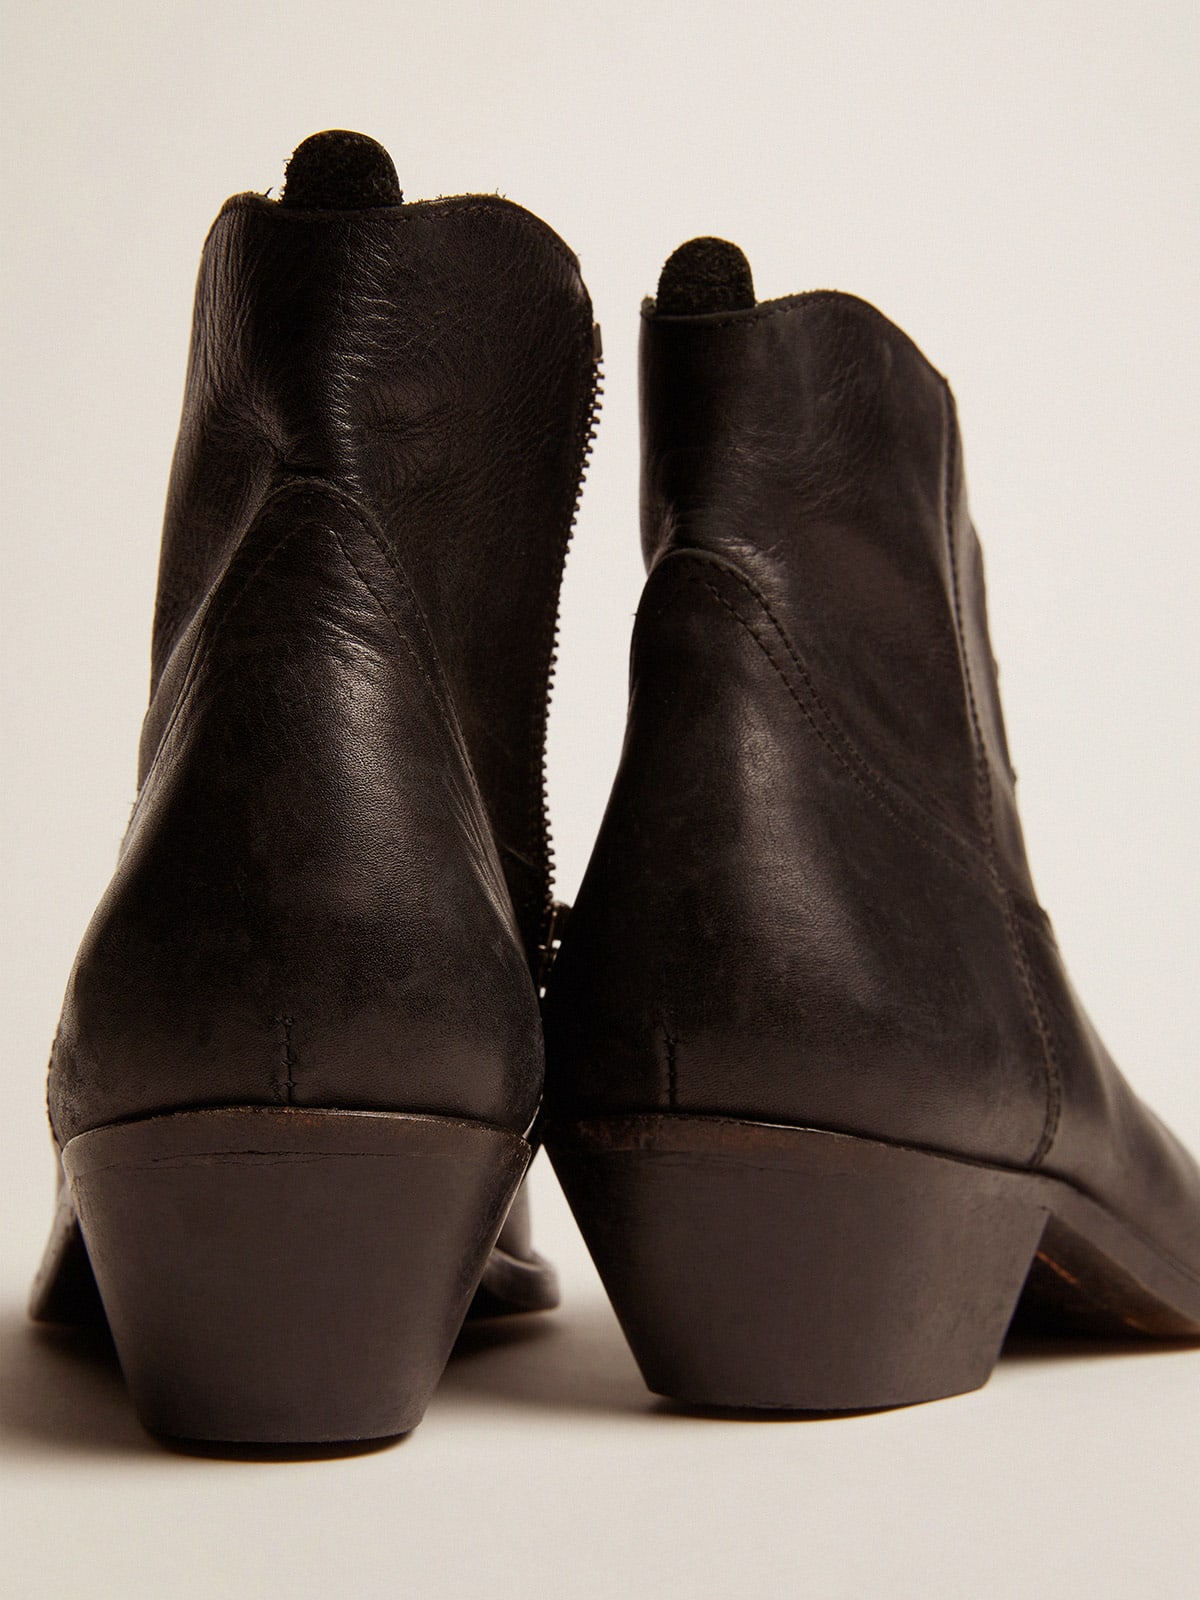 Golden Goose - Ankle boot Feminina de couro com decoração western in 